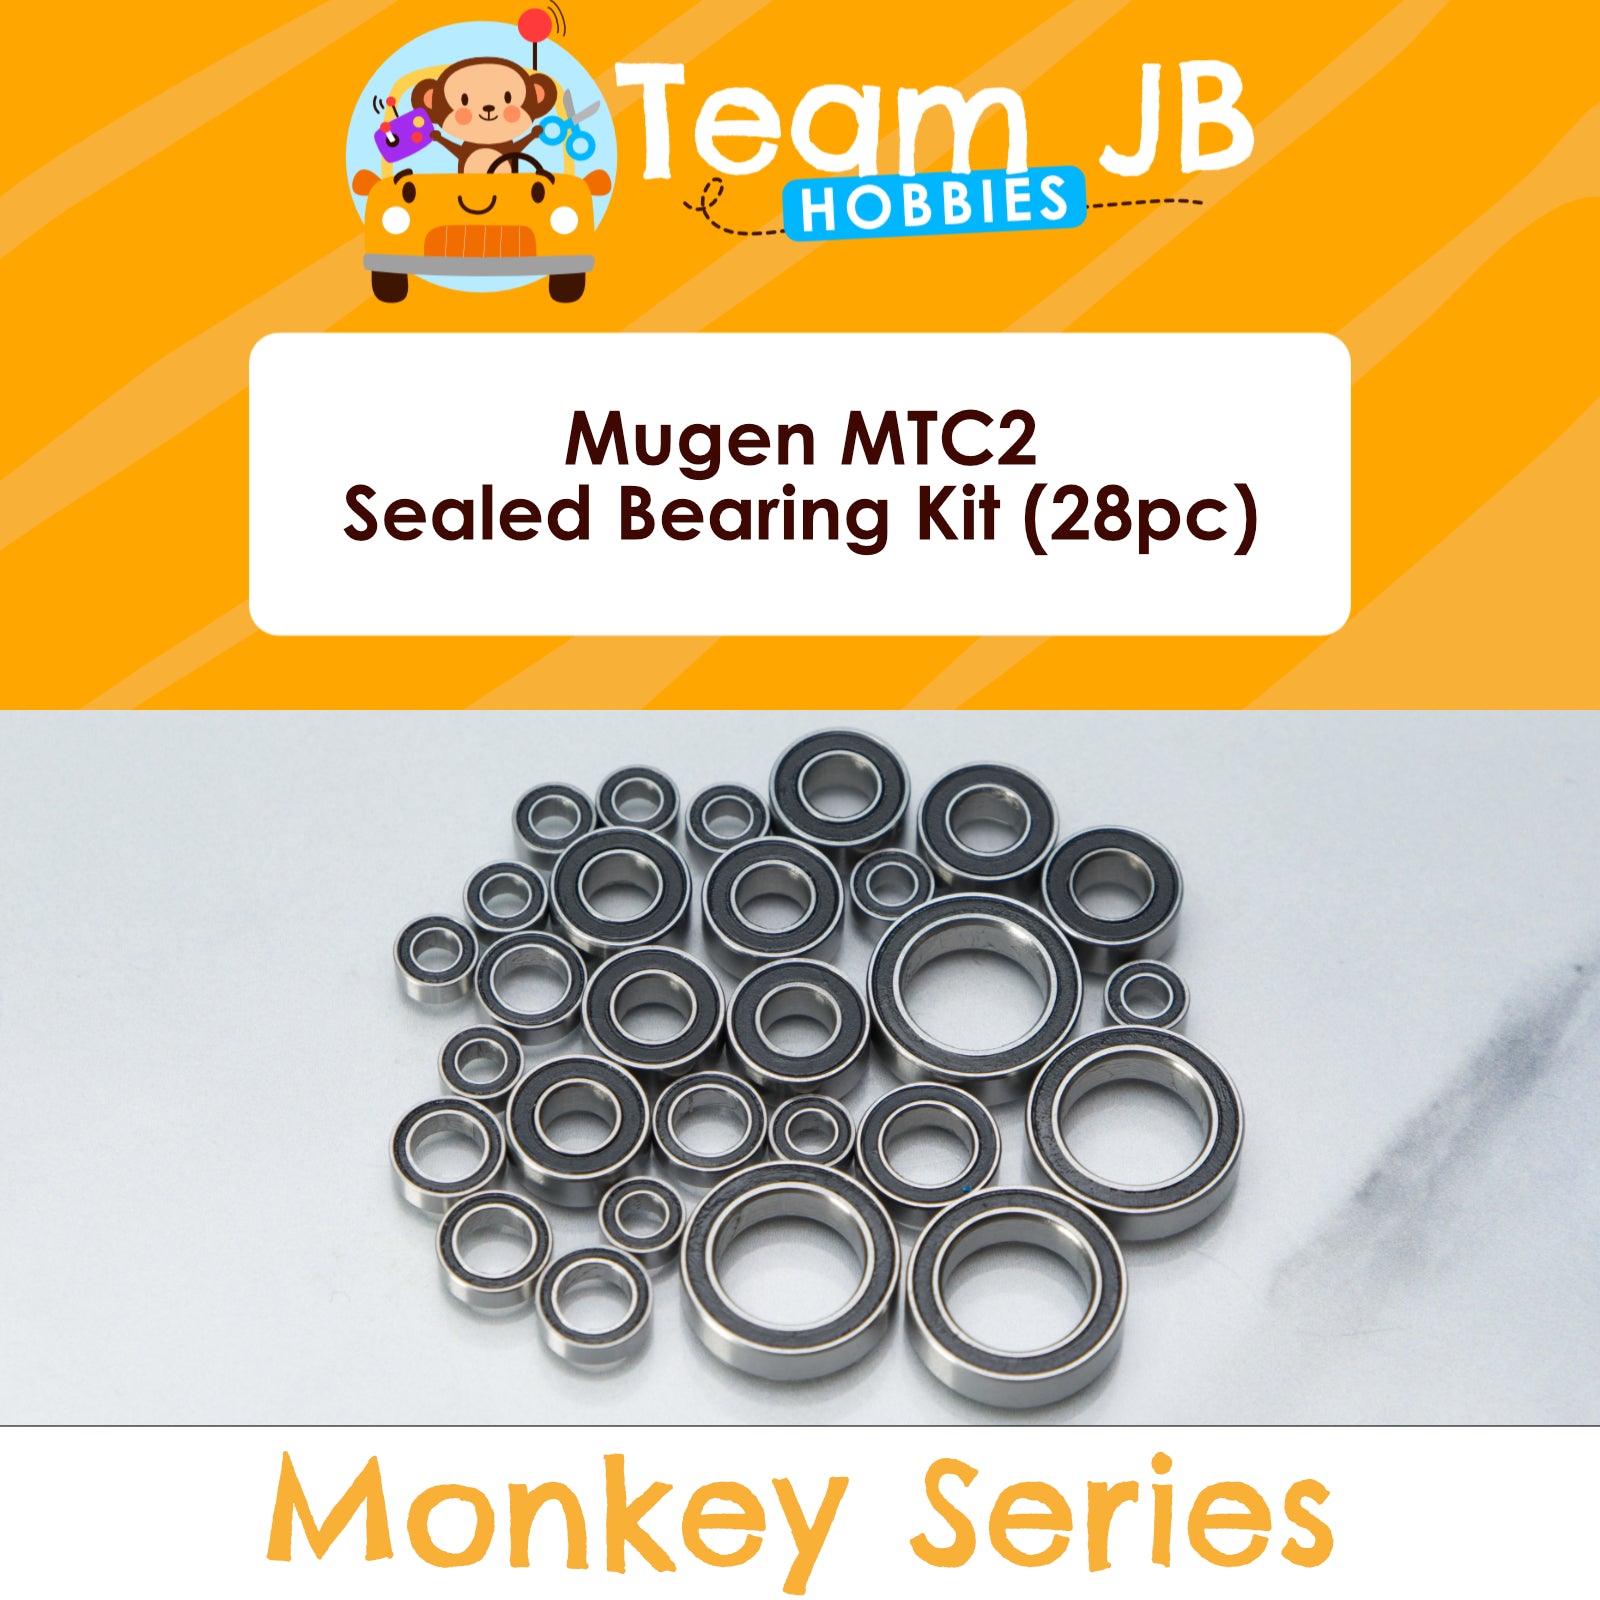 Mugen MTC2 - Sealed Bearing Kit